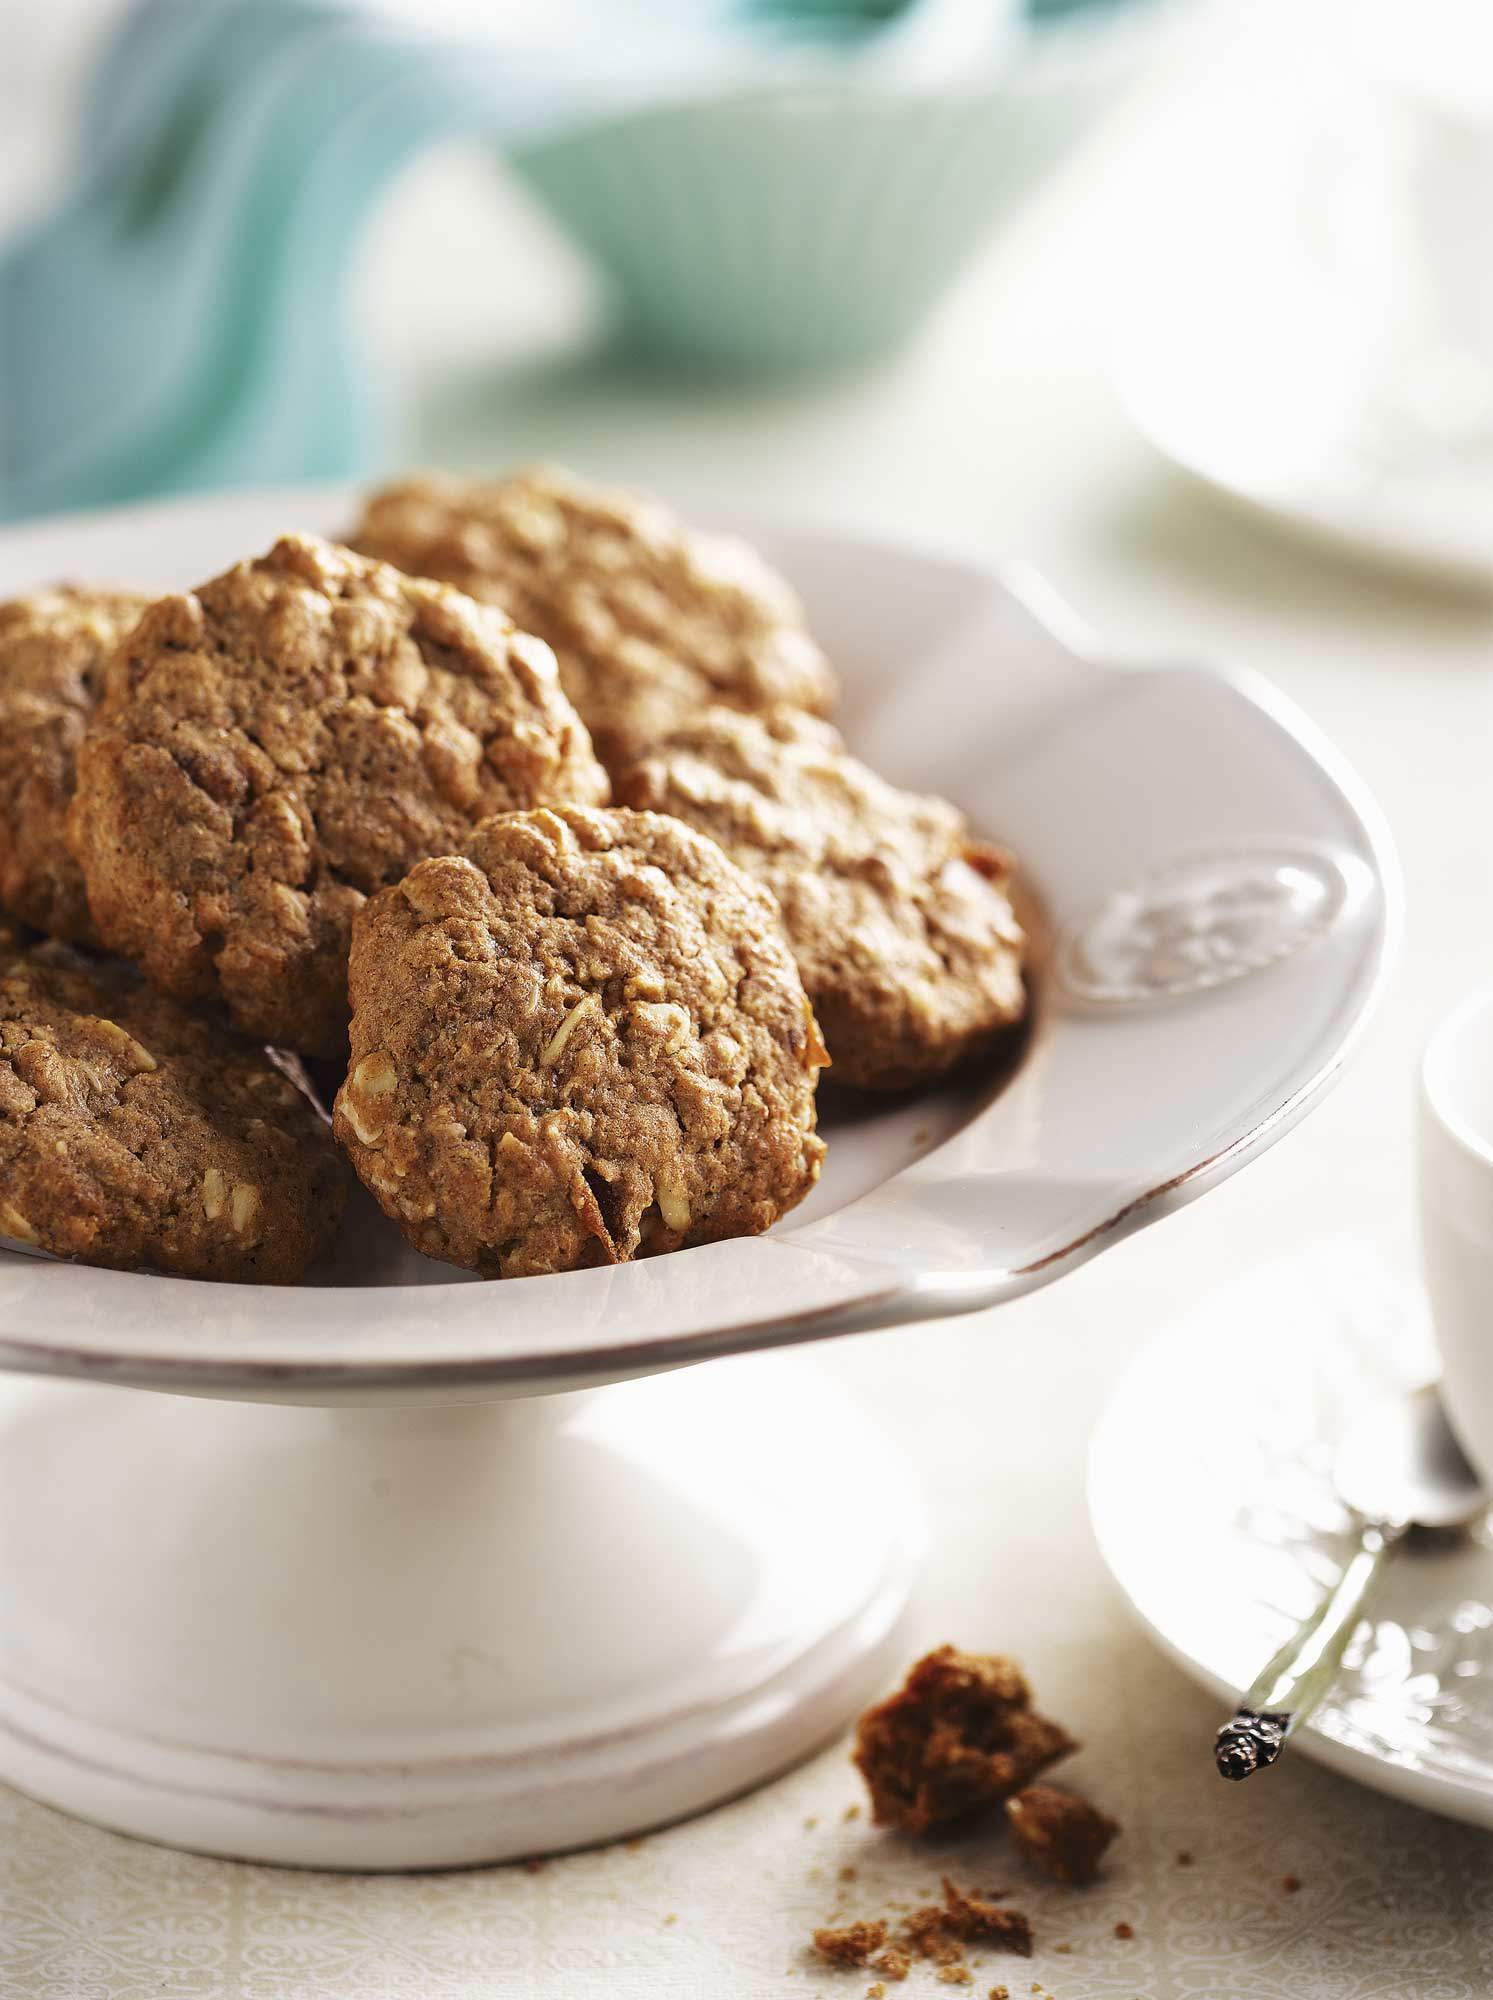 Desayunos saludables: galletas integrales de avena, dátiles y nueces.